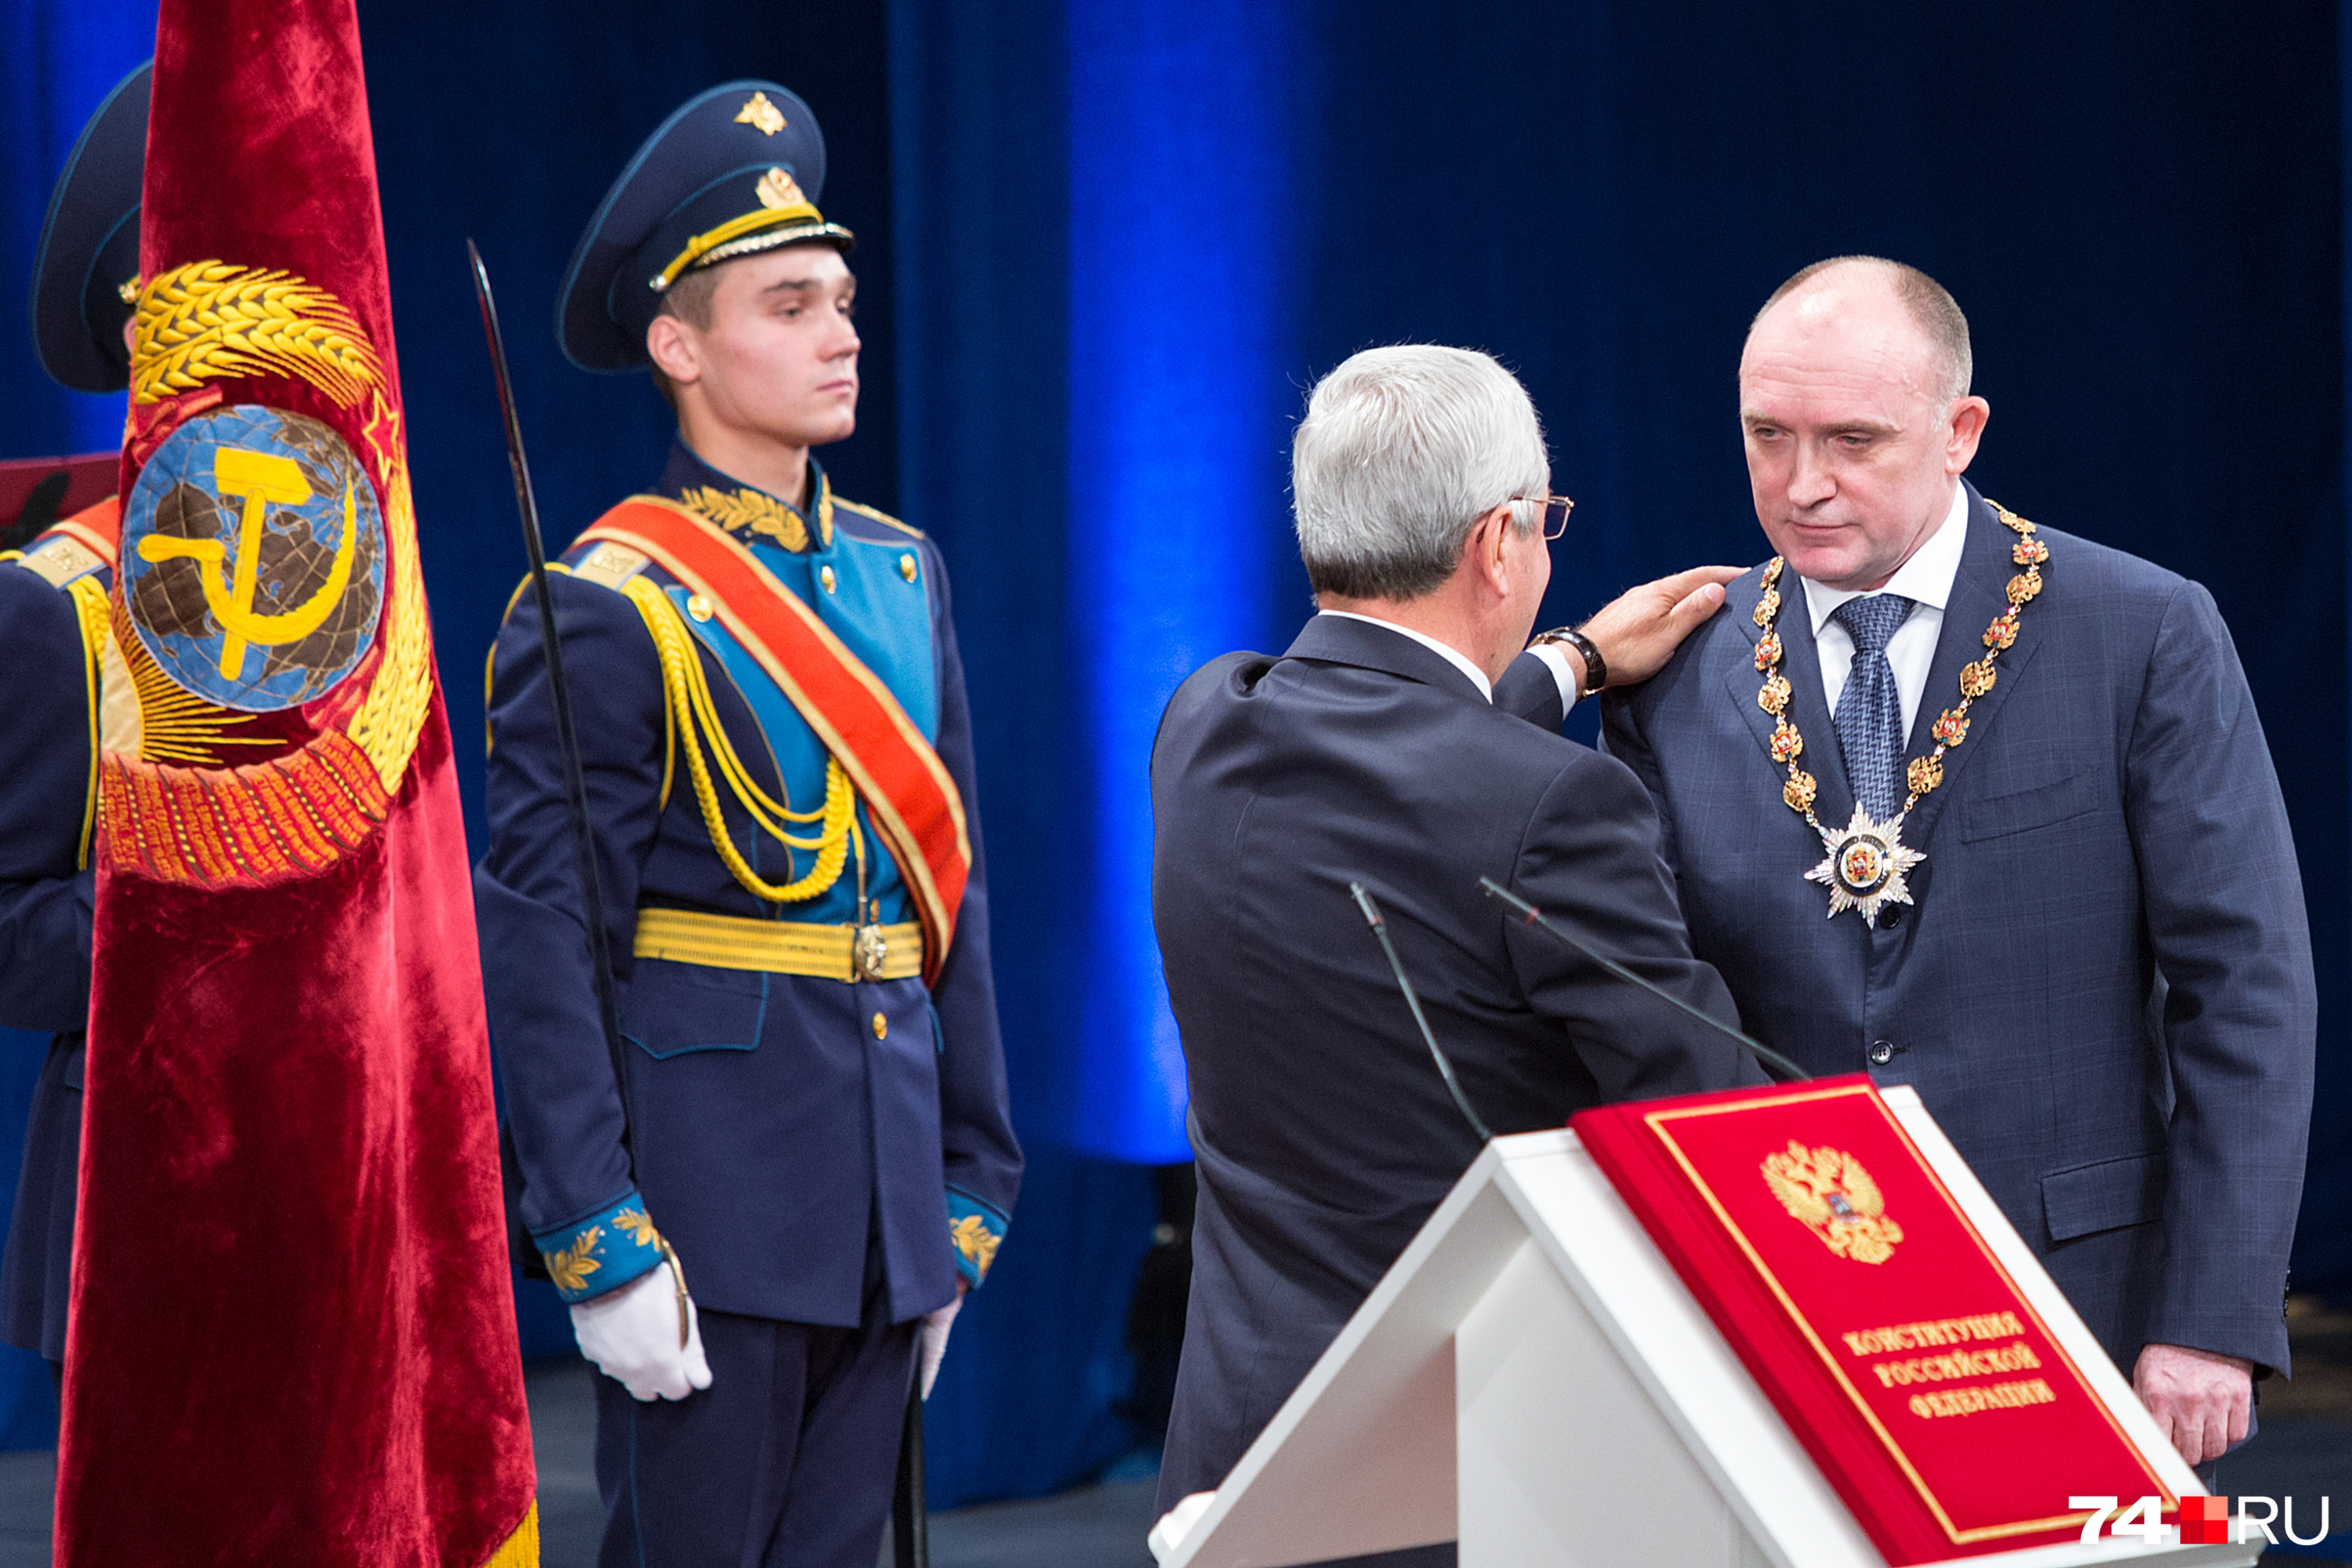 А на этом фото председатель Заксобрания на инаугурации благословил бывшего губернатора Бориса Дубровского